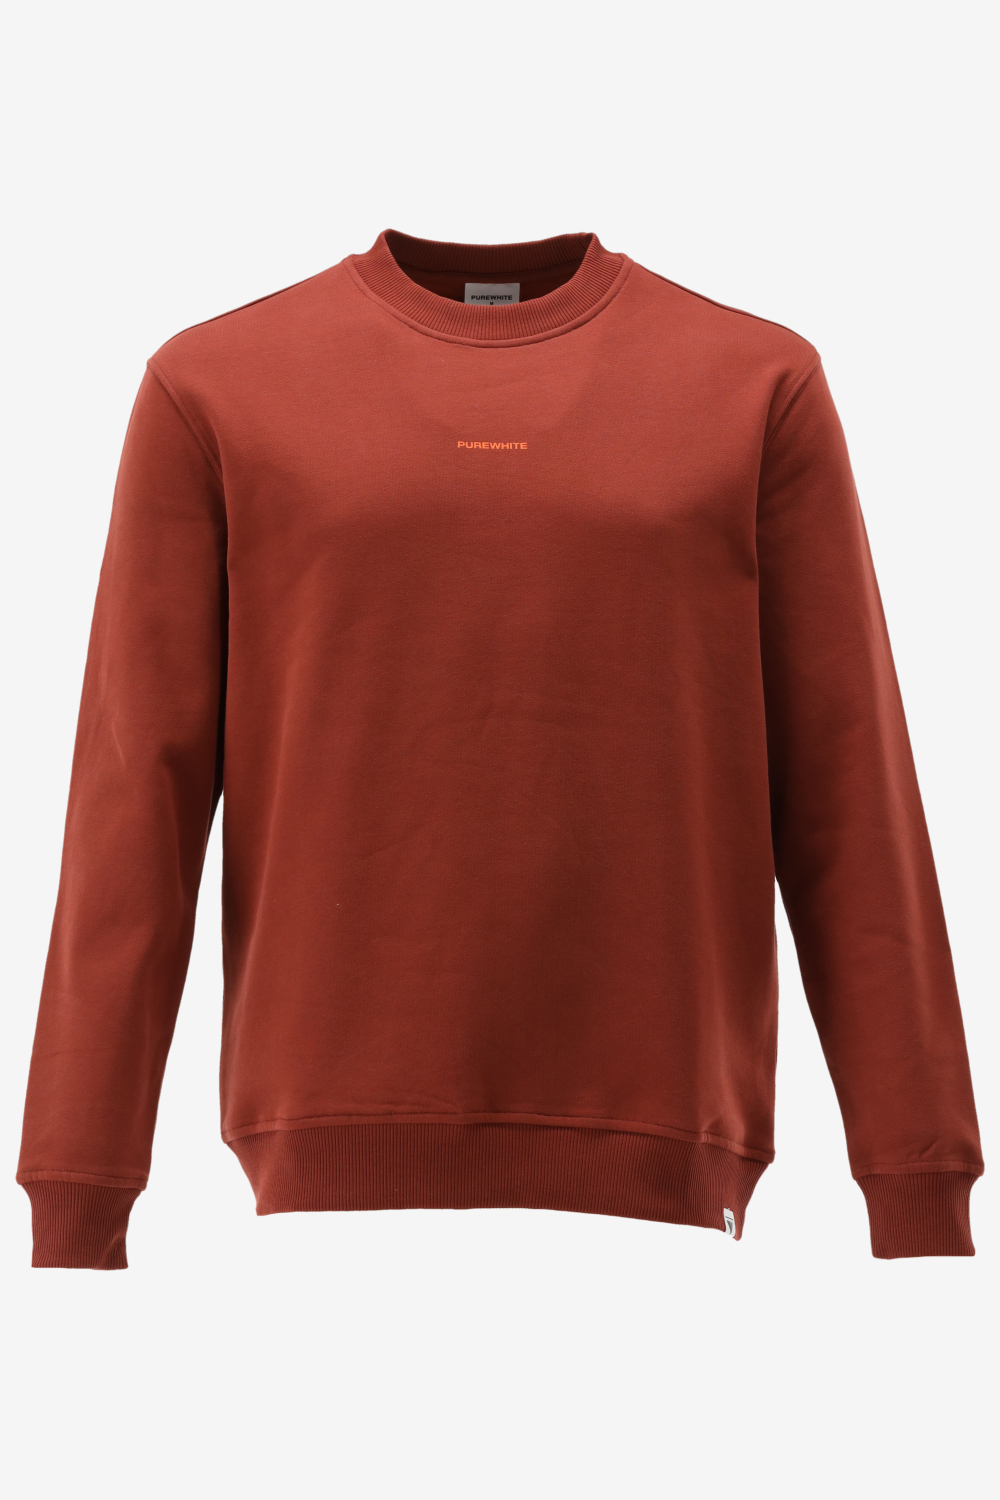 Purewhite - Heren Regular Fit Sweater - Oranje - Maat L